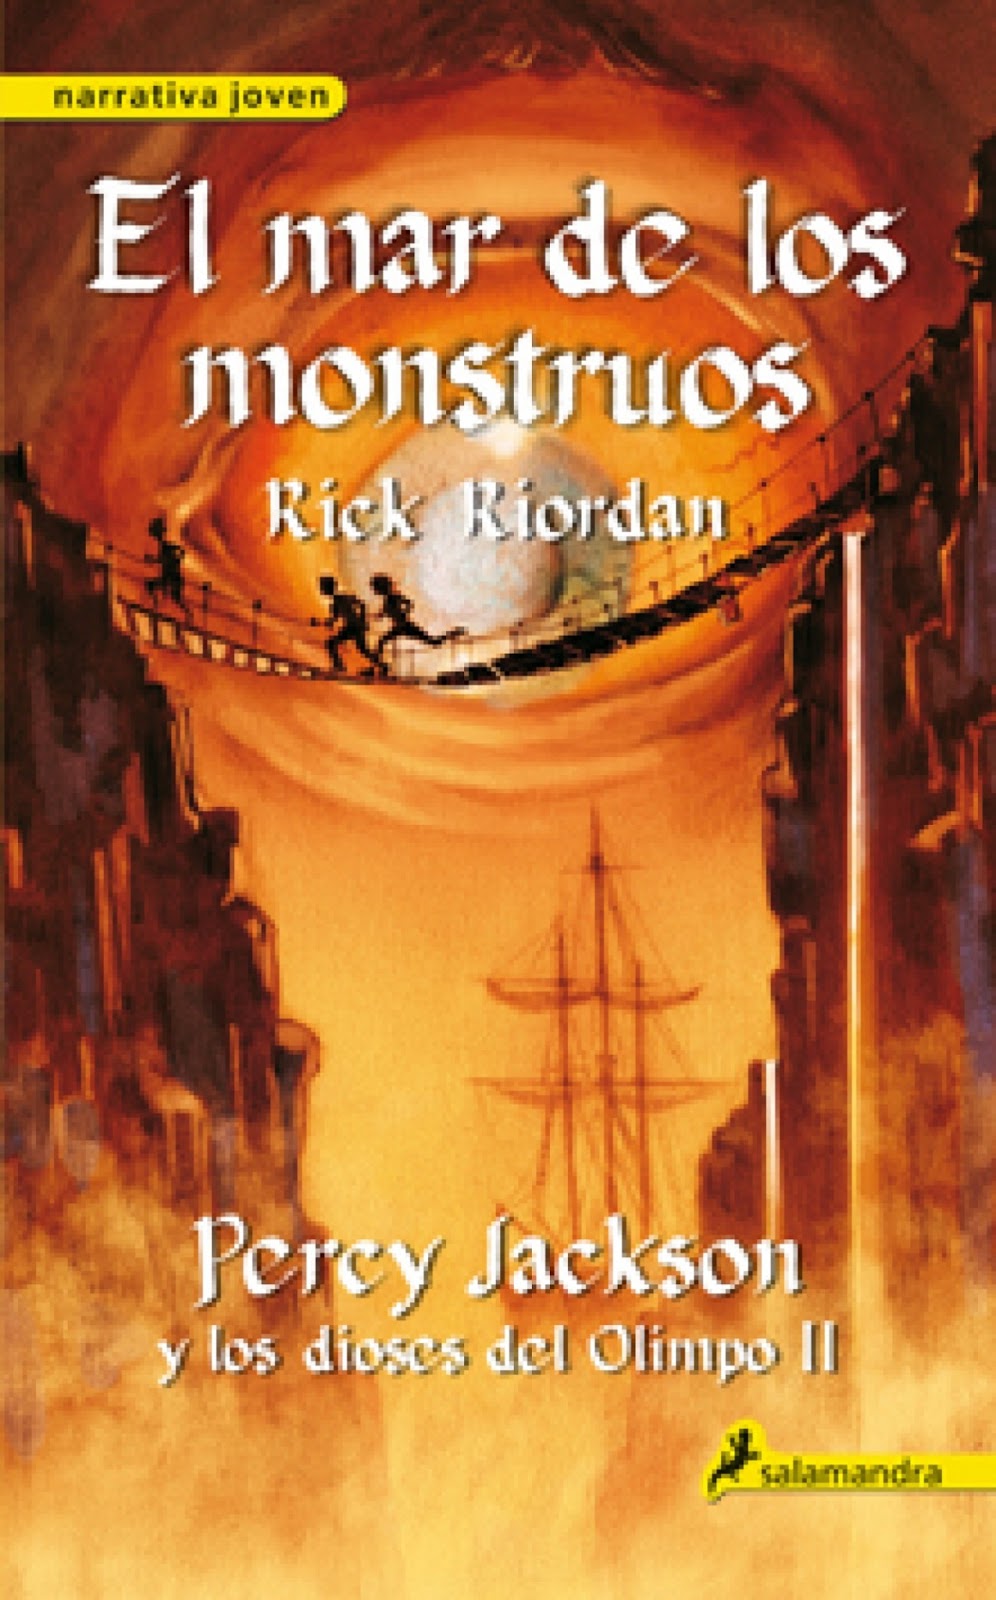 "Percy Jackson el mar de los Rick Riordan